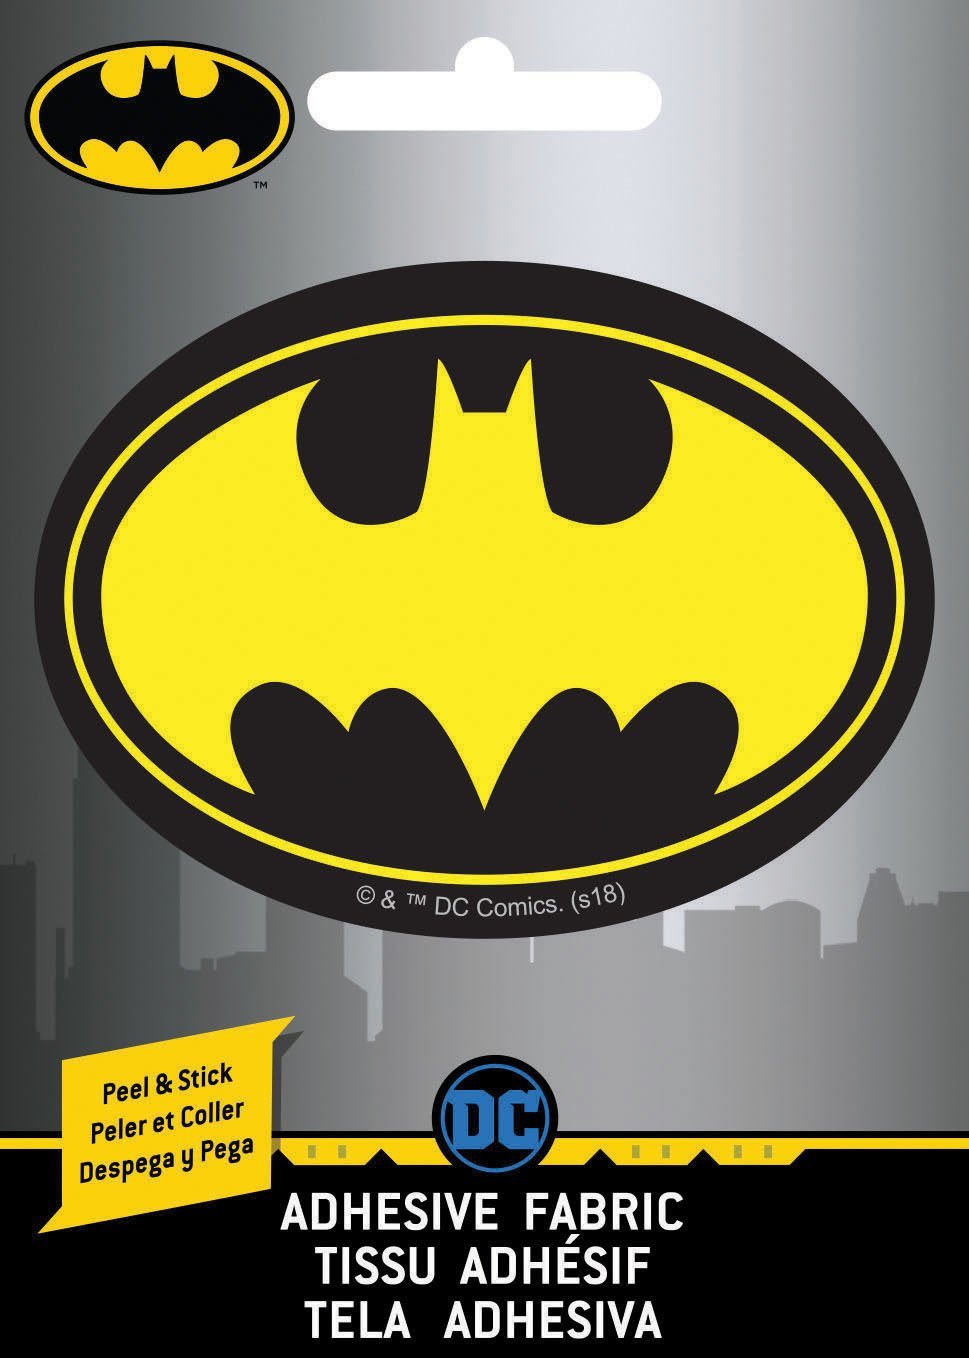 DC Comics Batman Logo - Appliqué Ad-Fab